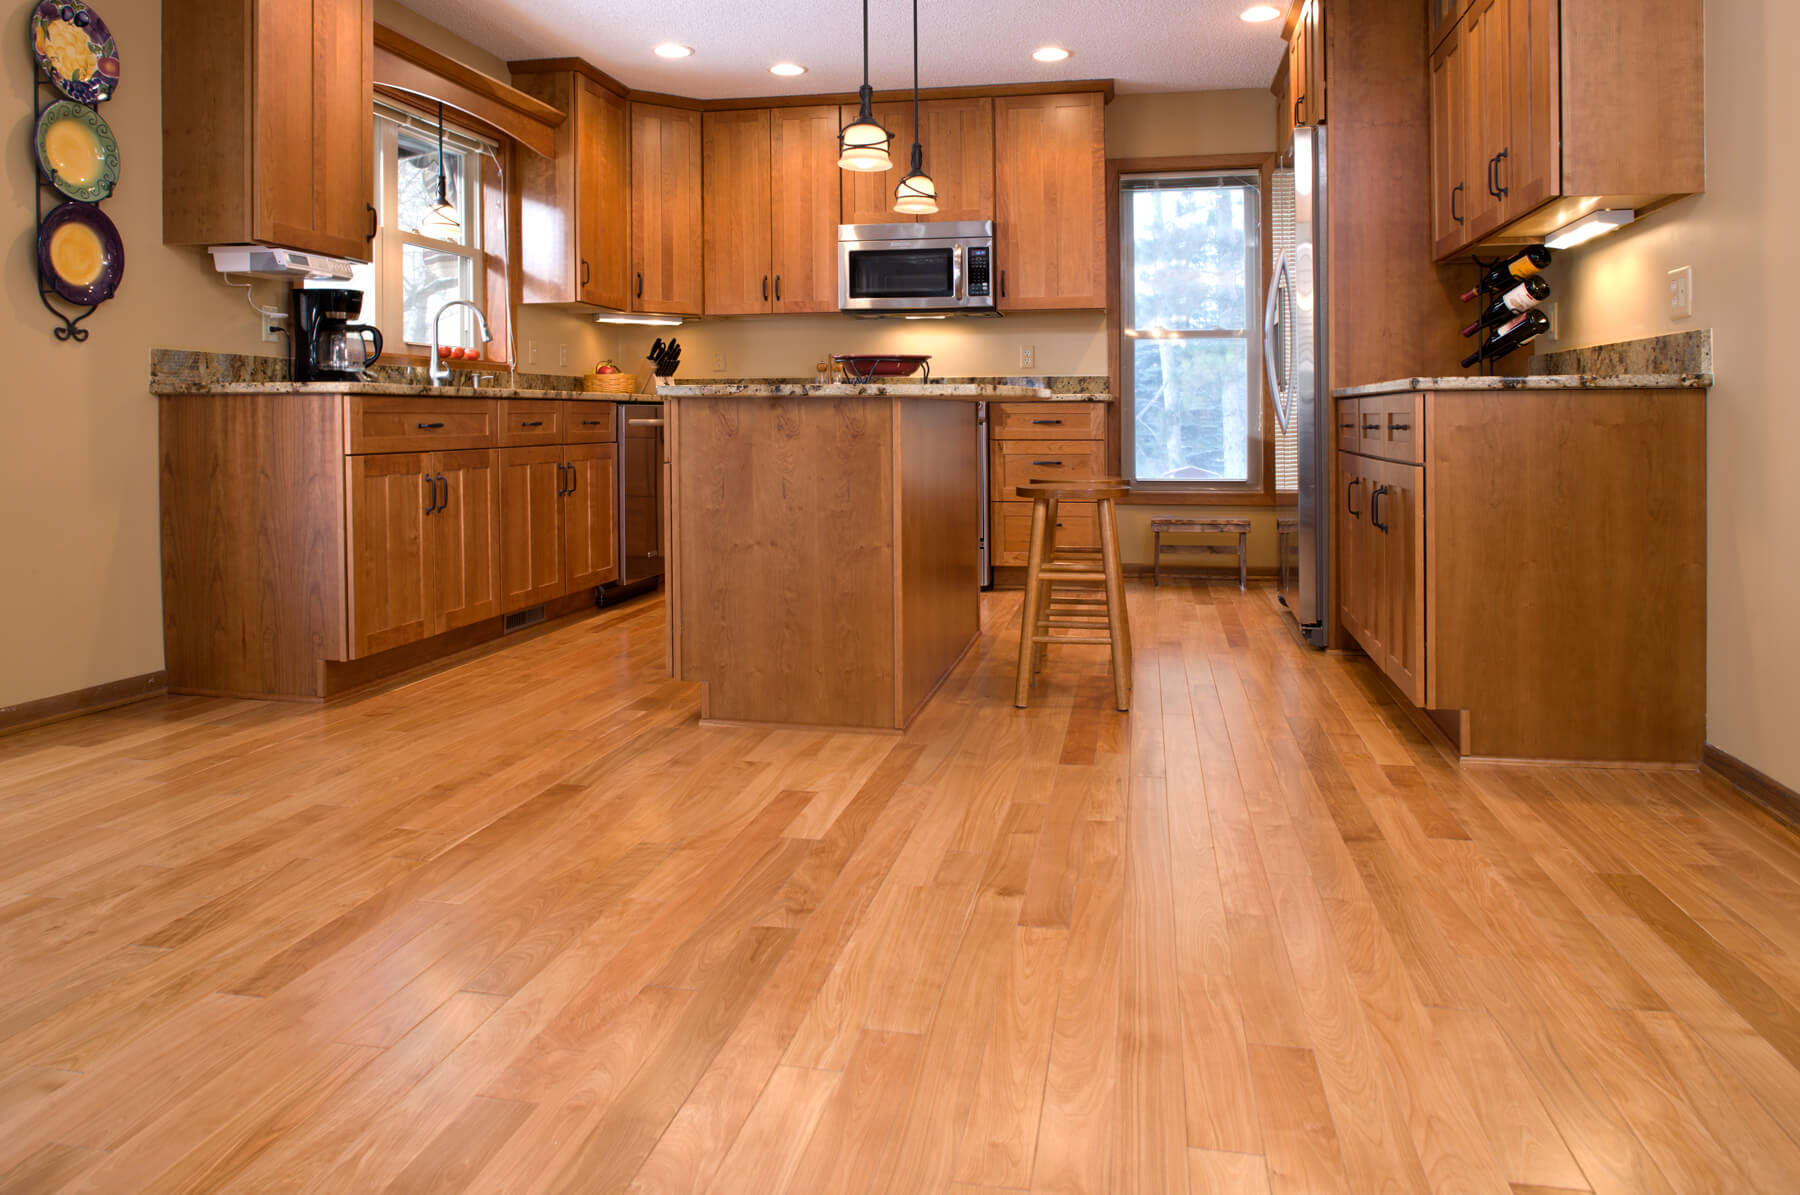 Solid Oak Wood Flooring In Kitchen